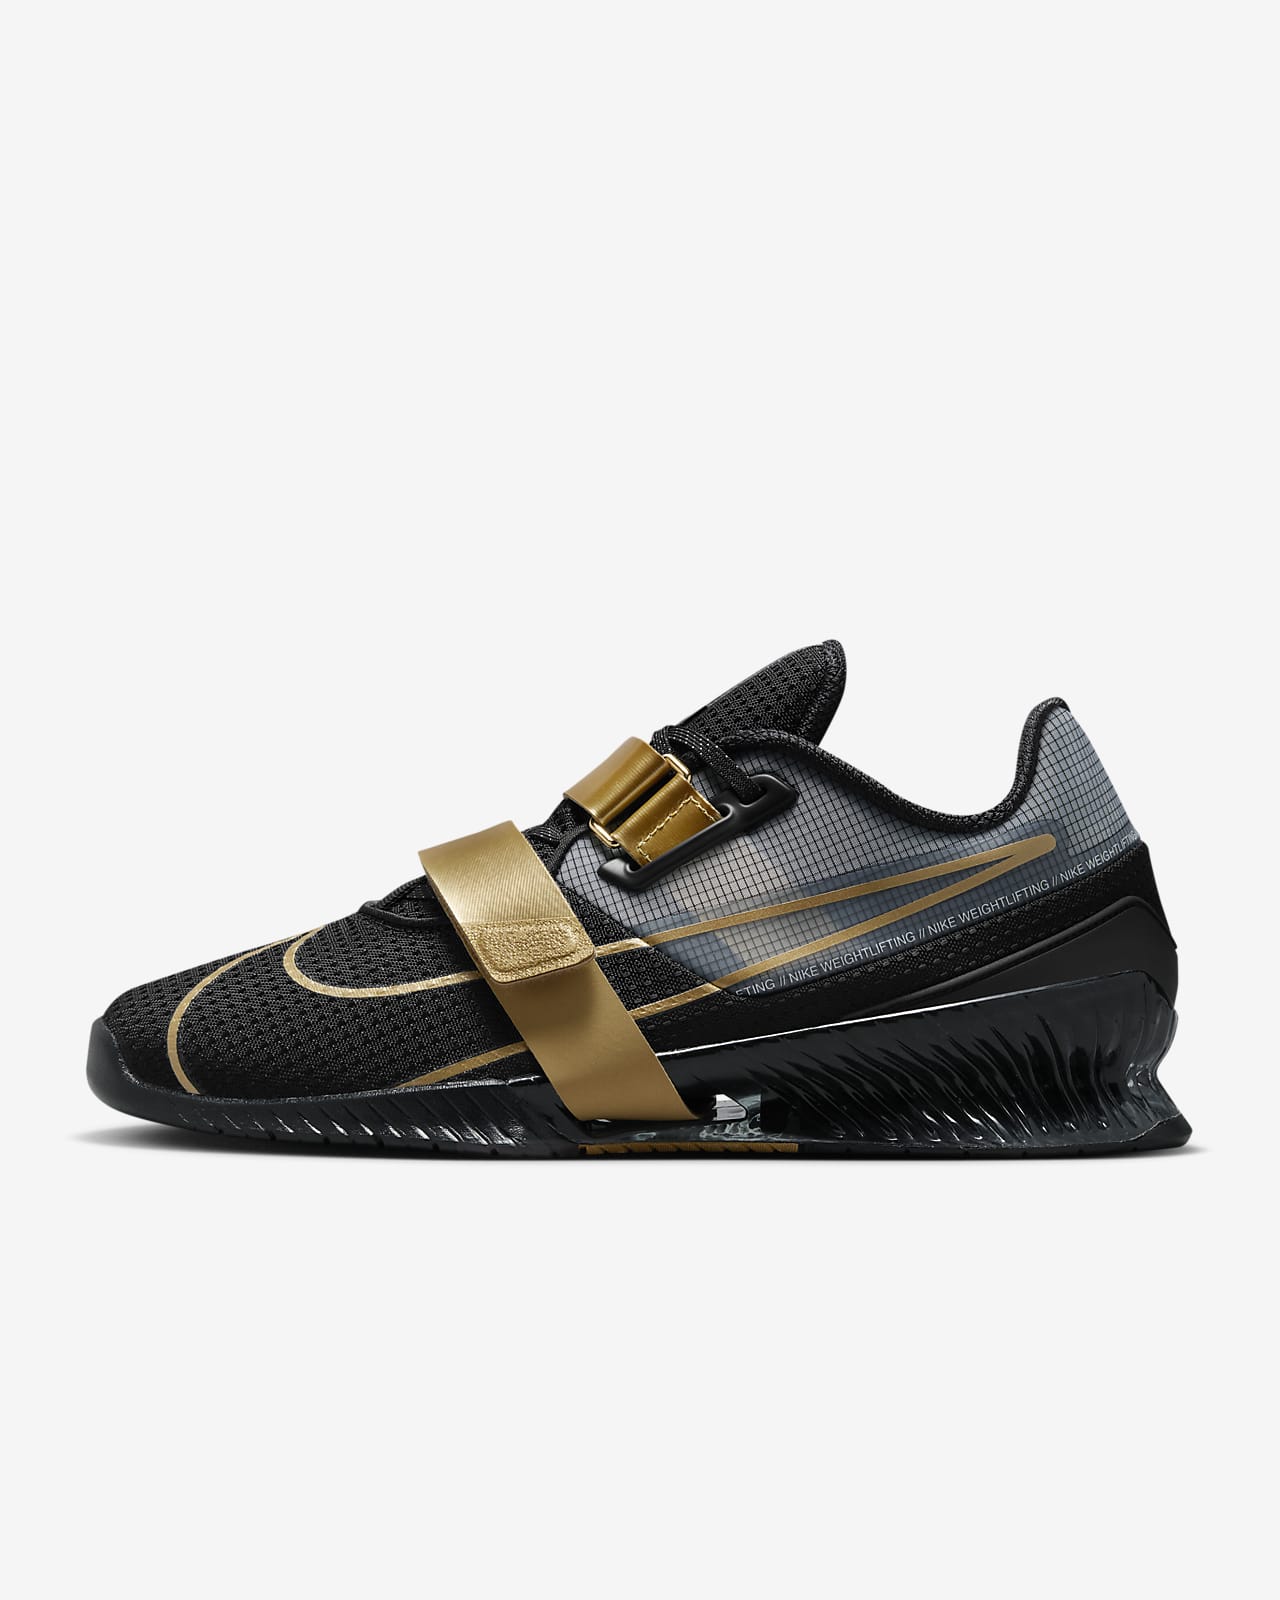 Παπούτσια άρσης βαρών Nike Romaleos 4